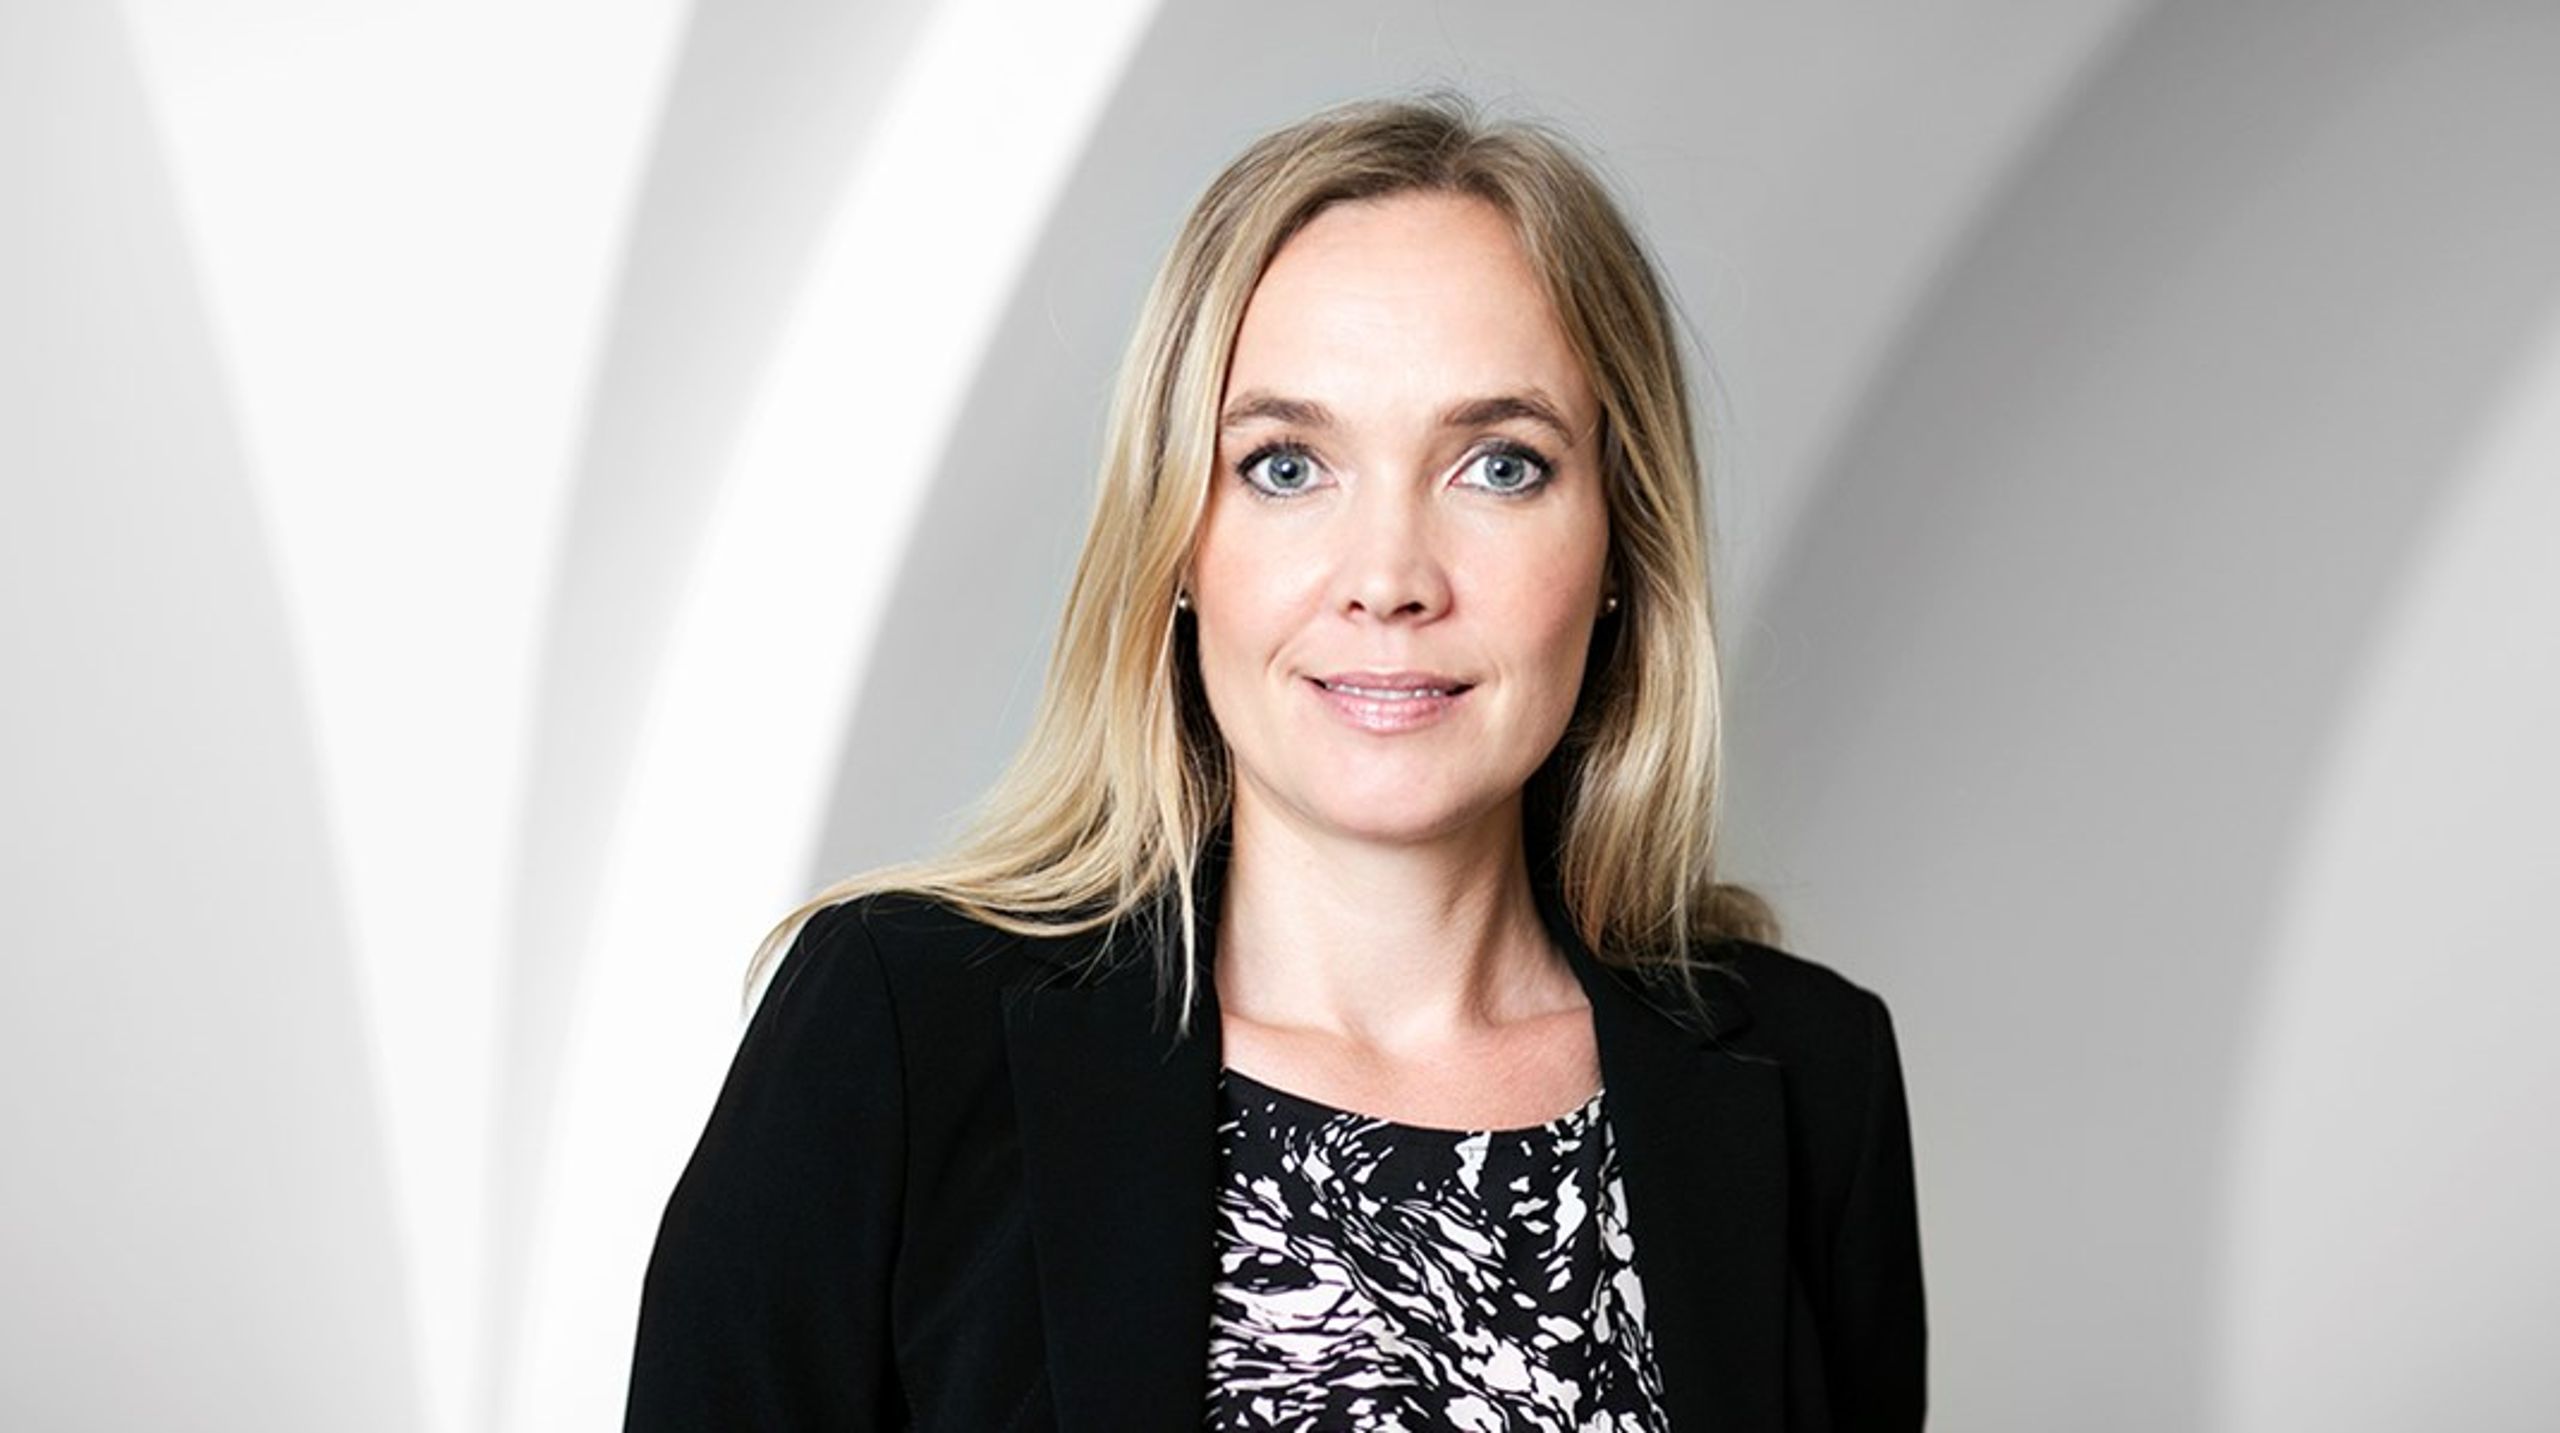 Hos Dansk Erhverv bakker vi op om at frisætte og udvikle den offentlige sektor således, at den kan håndtere fremtidens store udfordringer, skriver branchedirektør Louise Riisgaard.